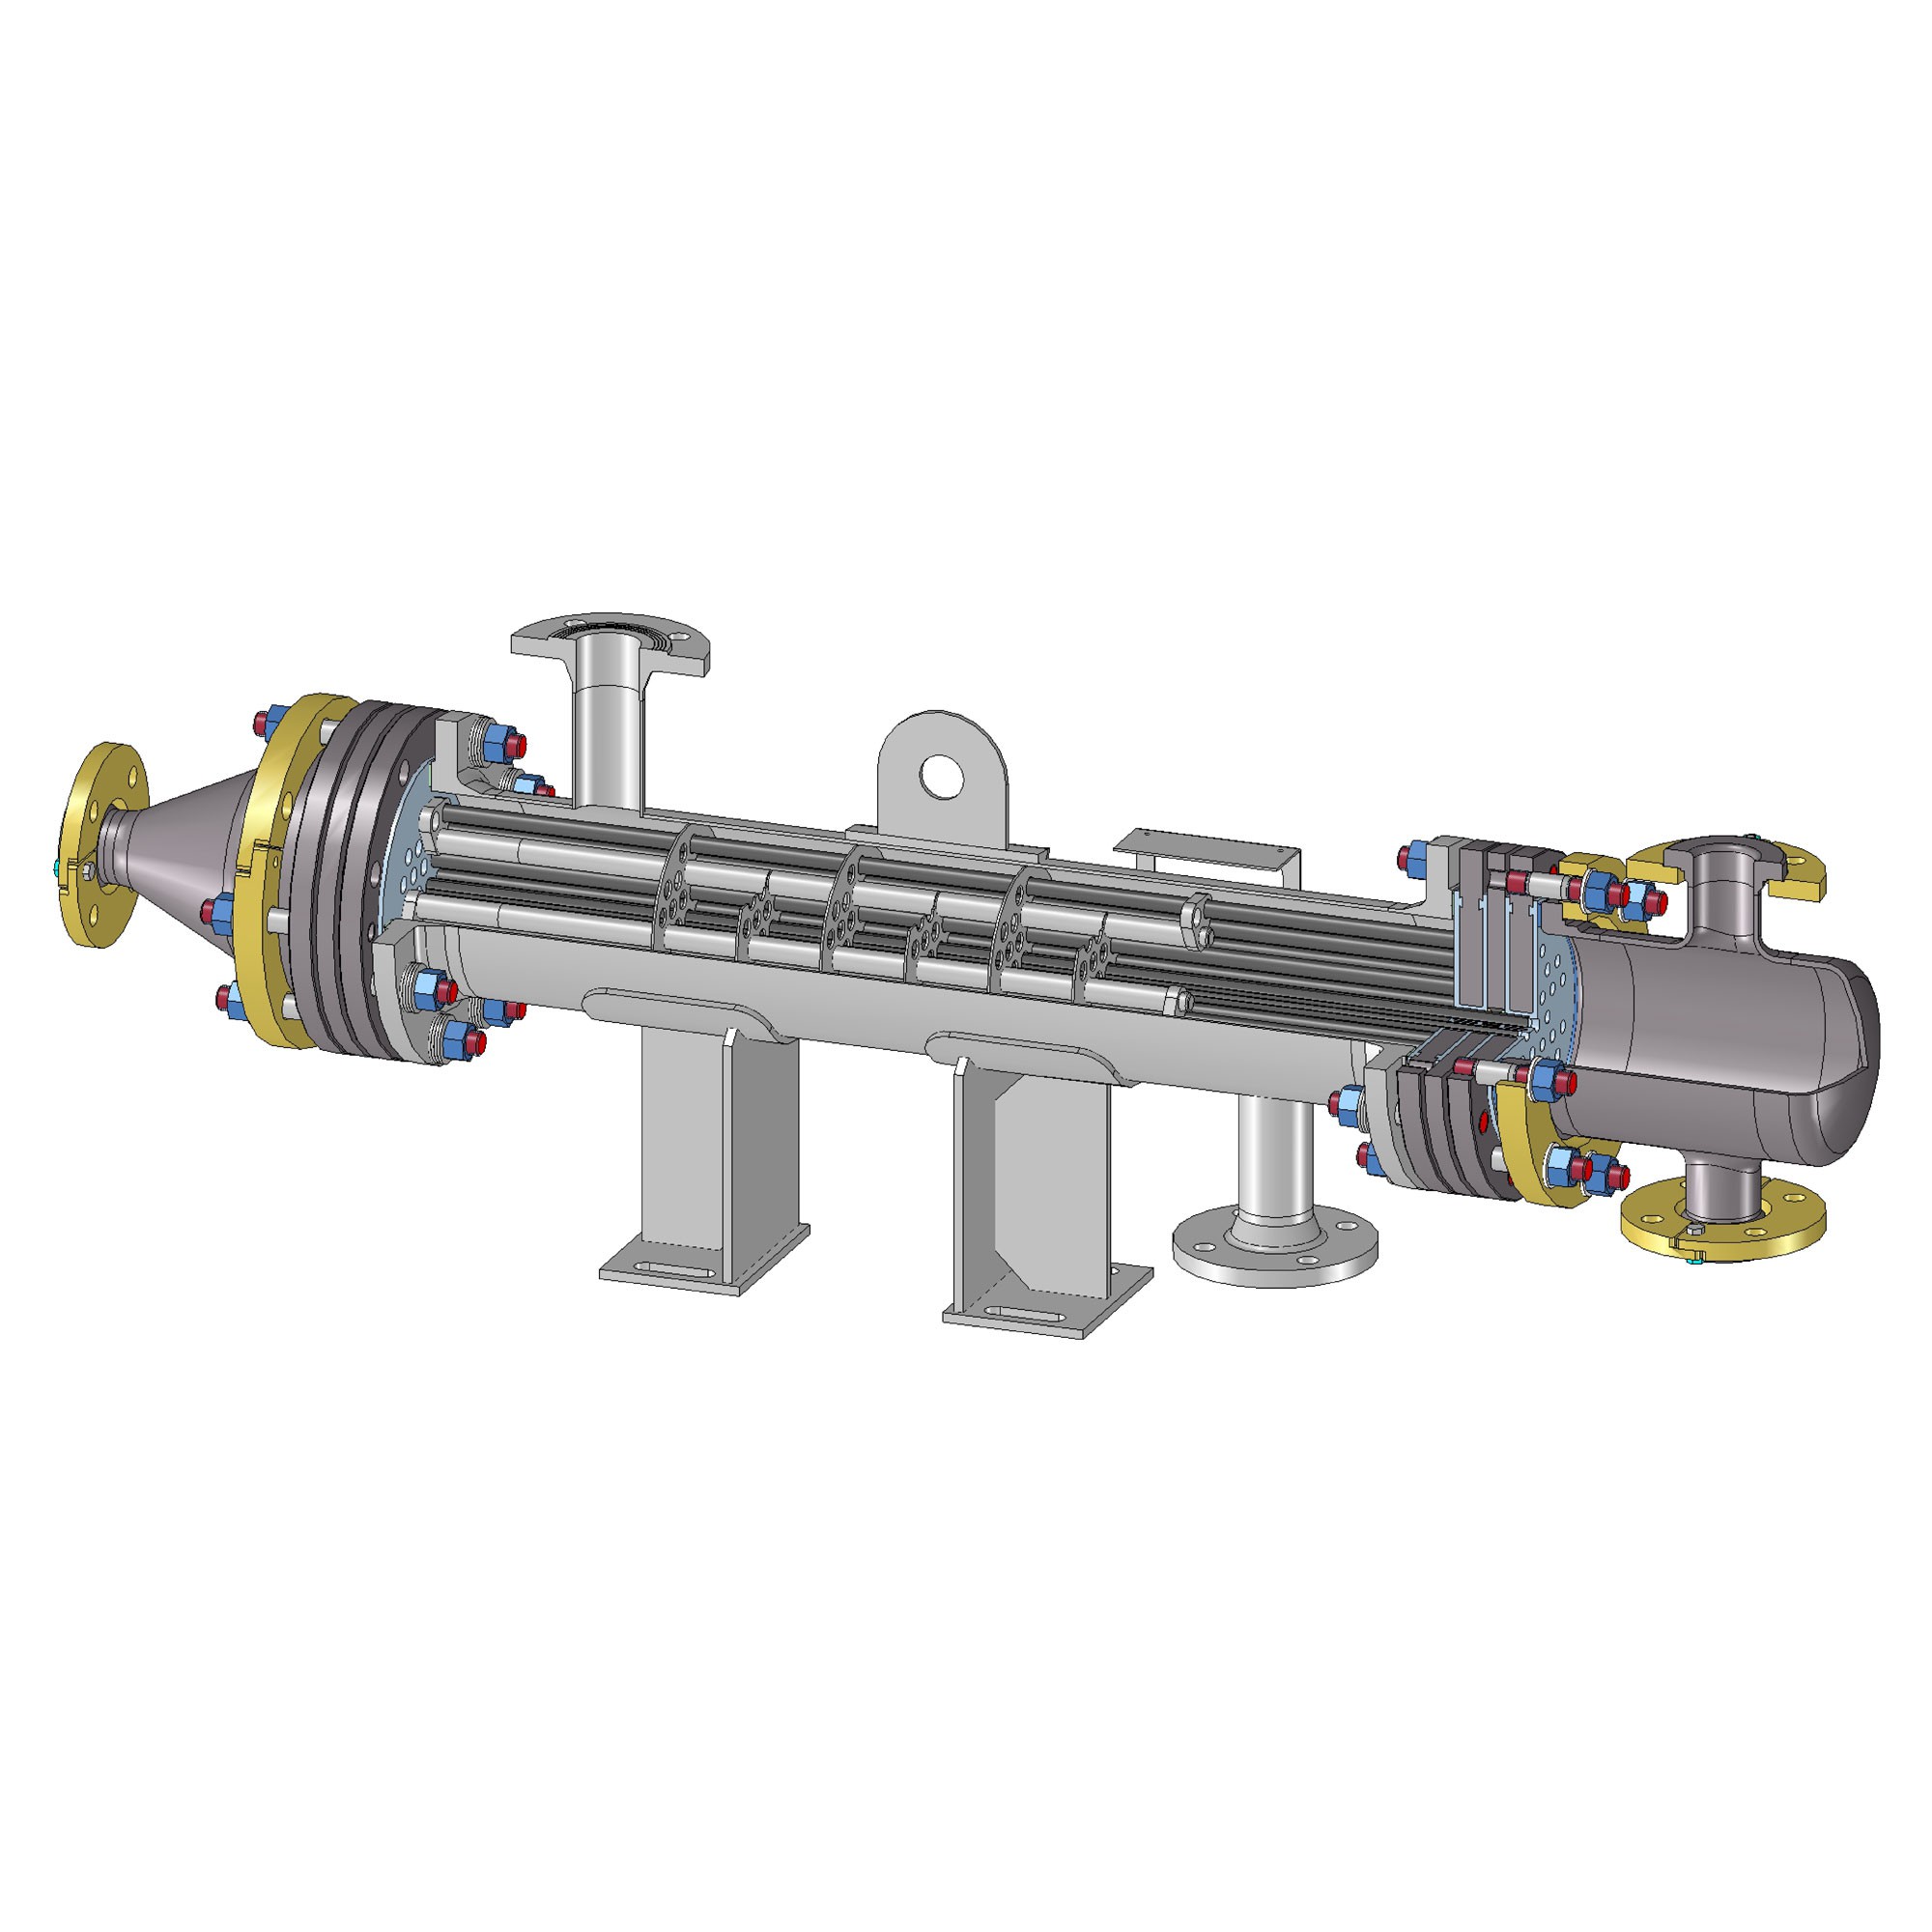 Intercambiadores de calor tipo casco y tubos (shell and tubes heat  exchangers) 